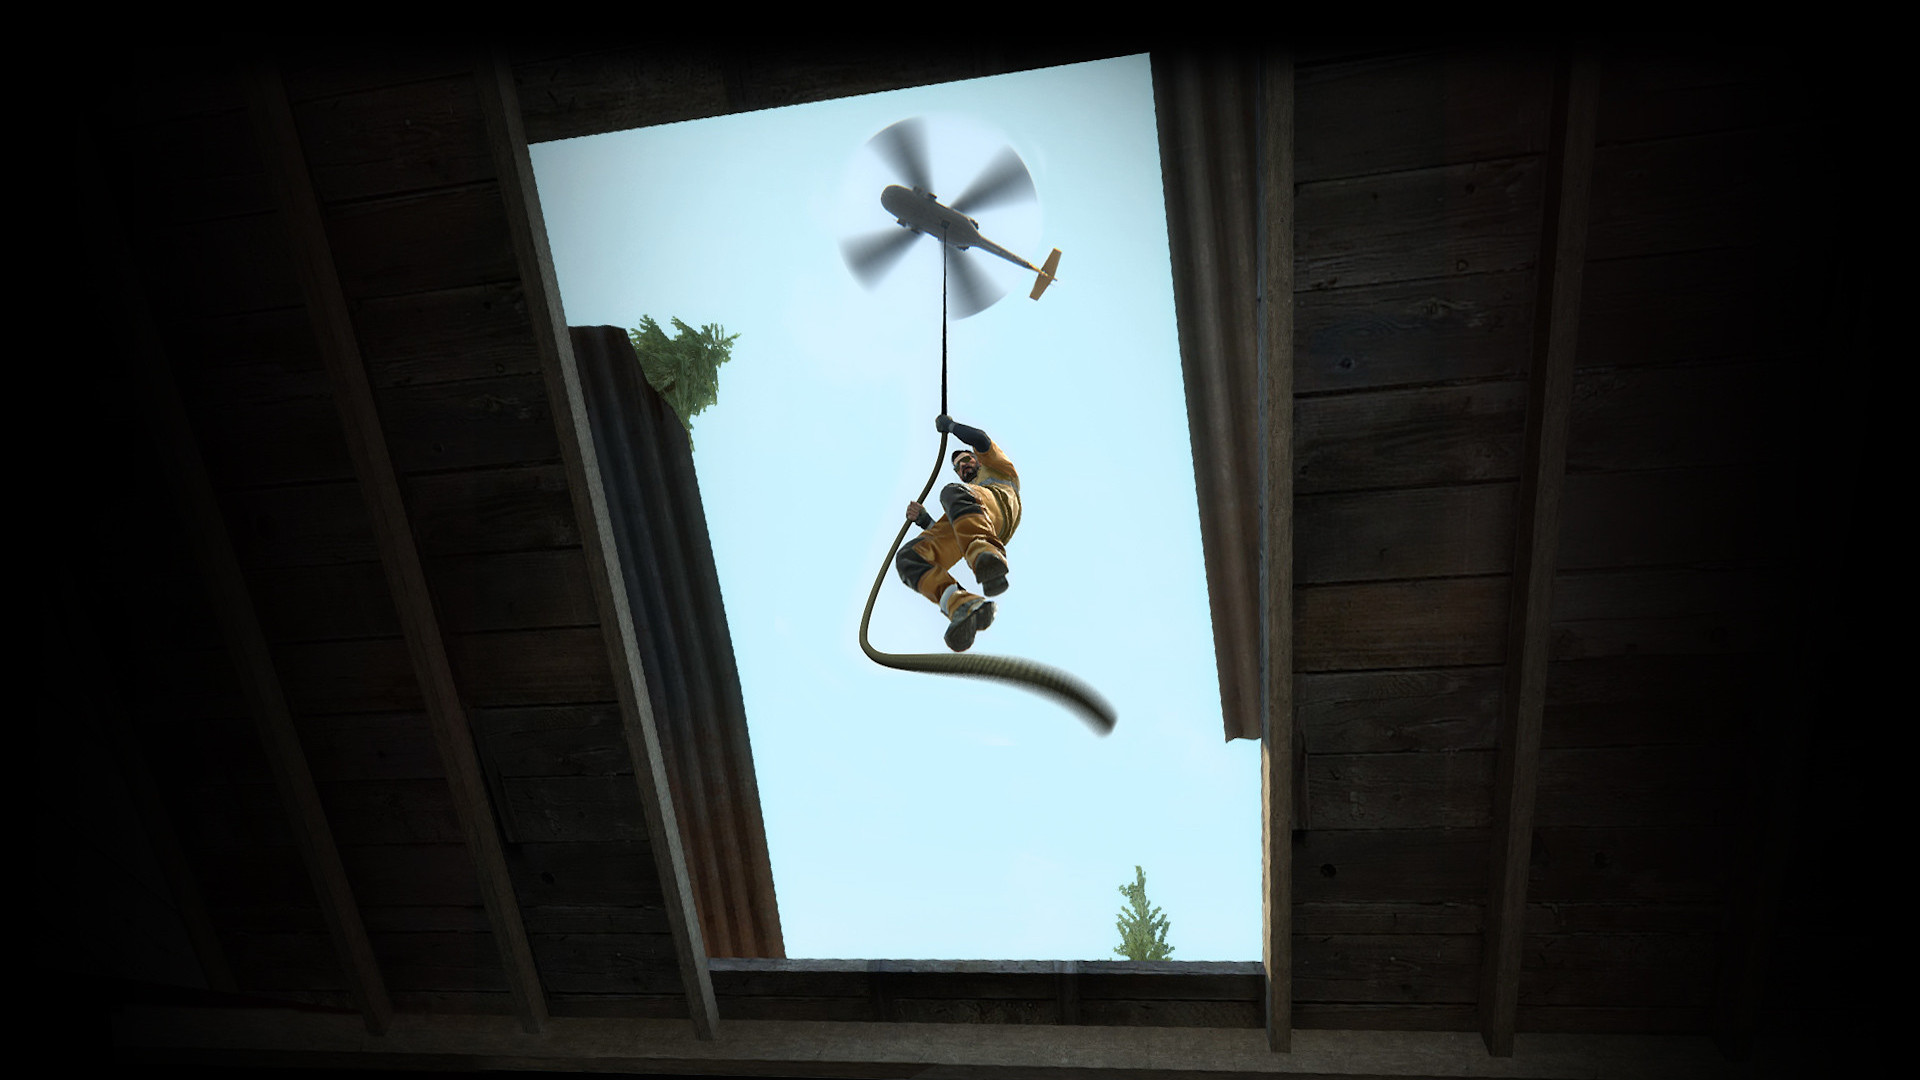 Best Battle Royale Games: Mężczyzna w pomarańczowym kombinezonie schodzi lina z helikoptera w CS: GOS Danger Zone